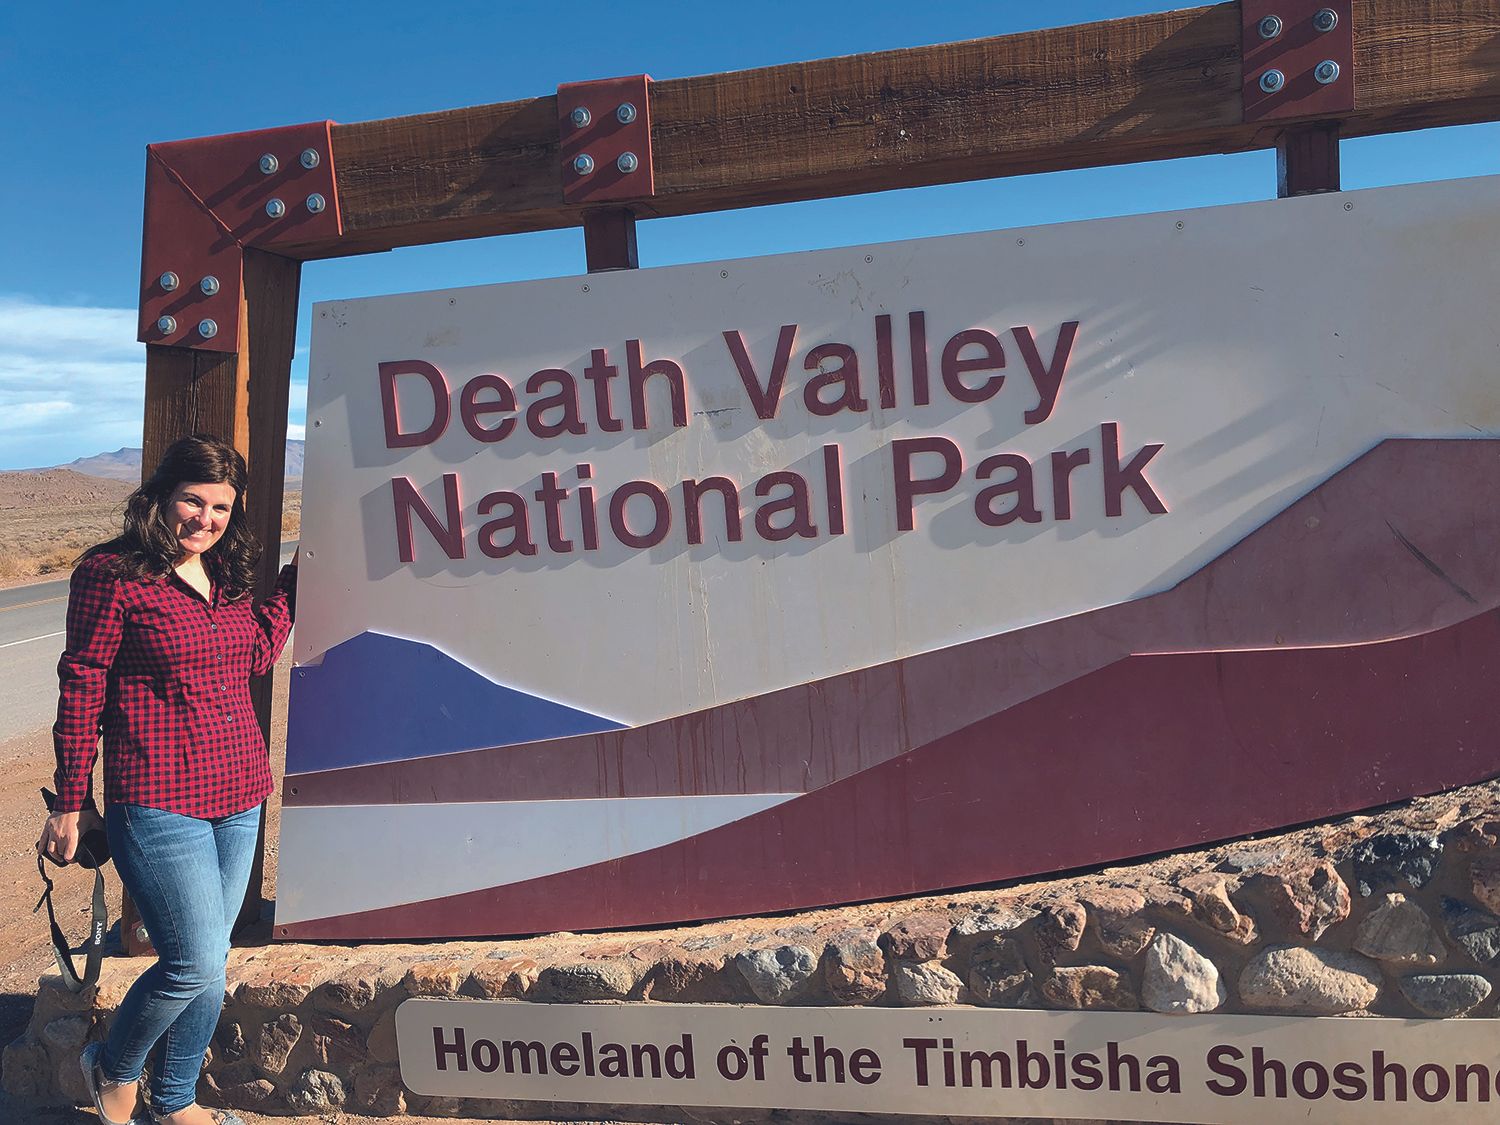 Isabel en el Death Valley National Park, Estados Unidos.